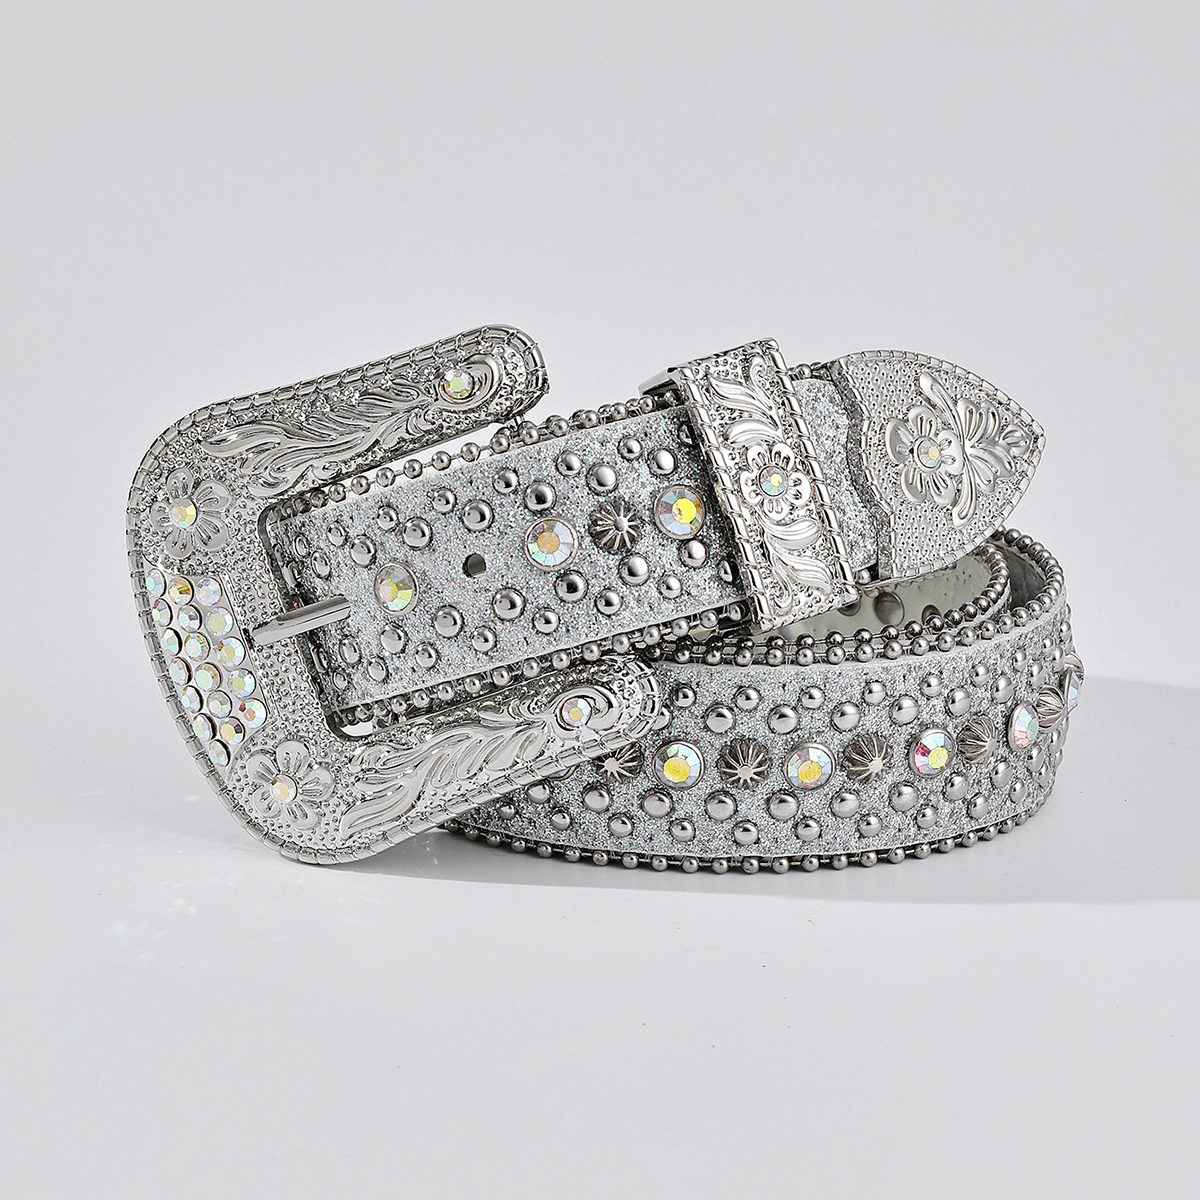  Luxury Strap Diamond Wide Buckle Belt For Women Men